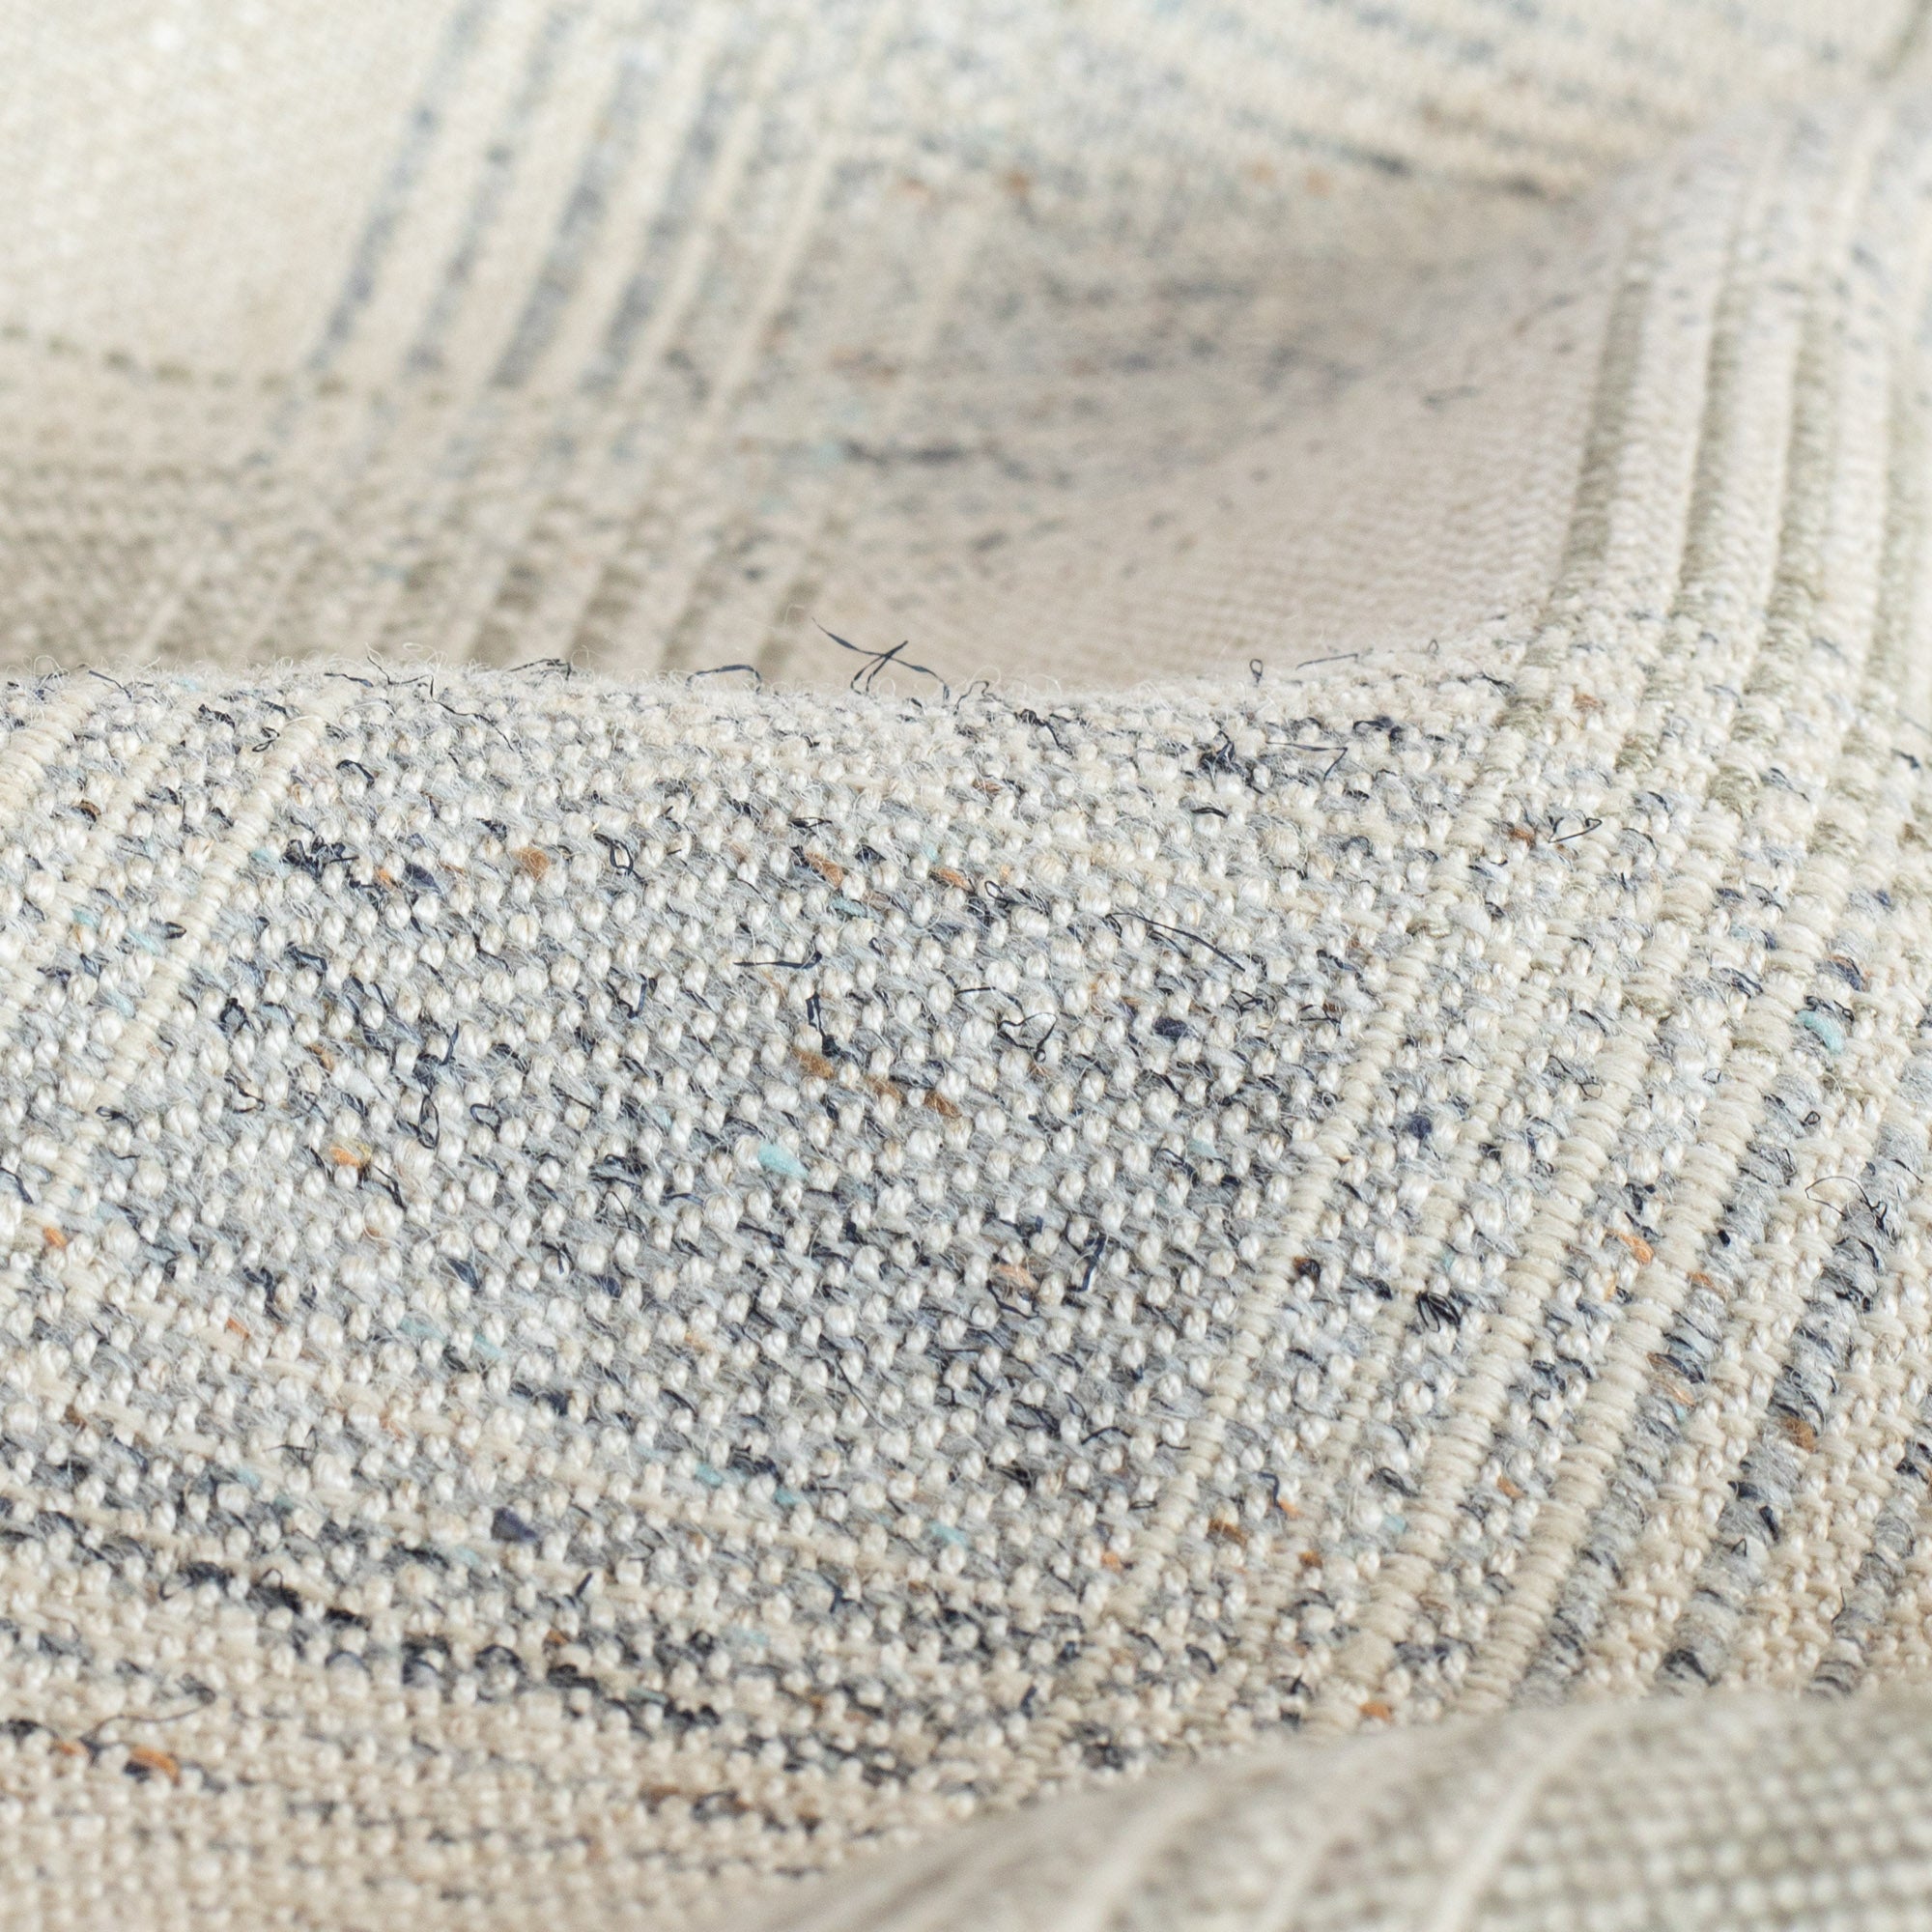 a light gray and denim blue plaid fabric : close up view